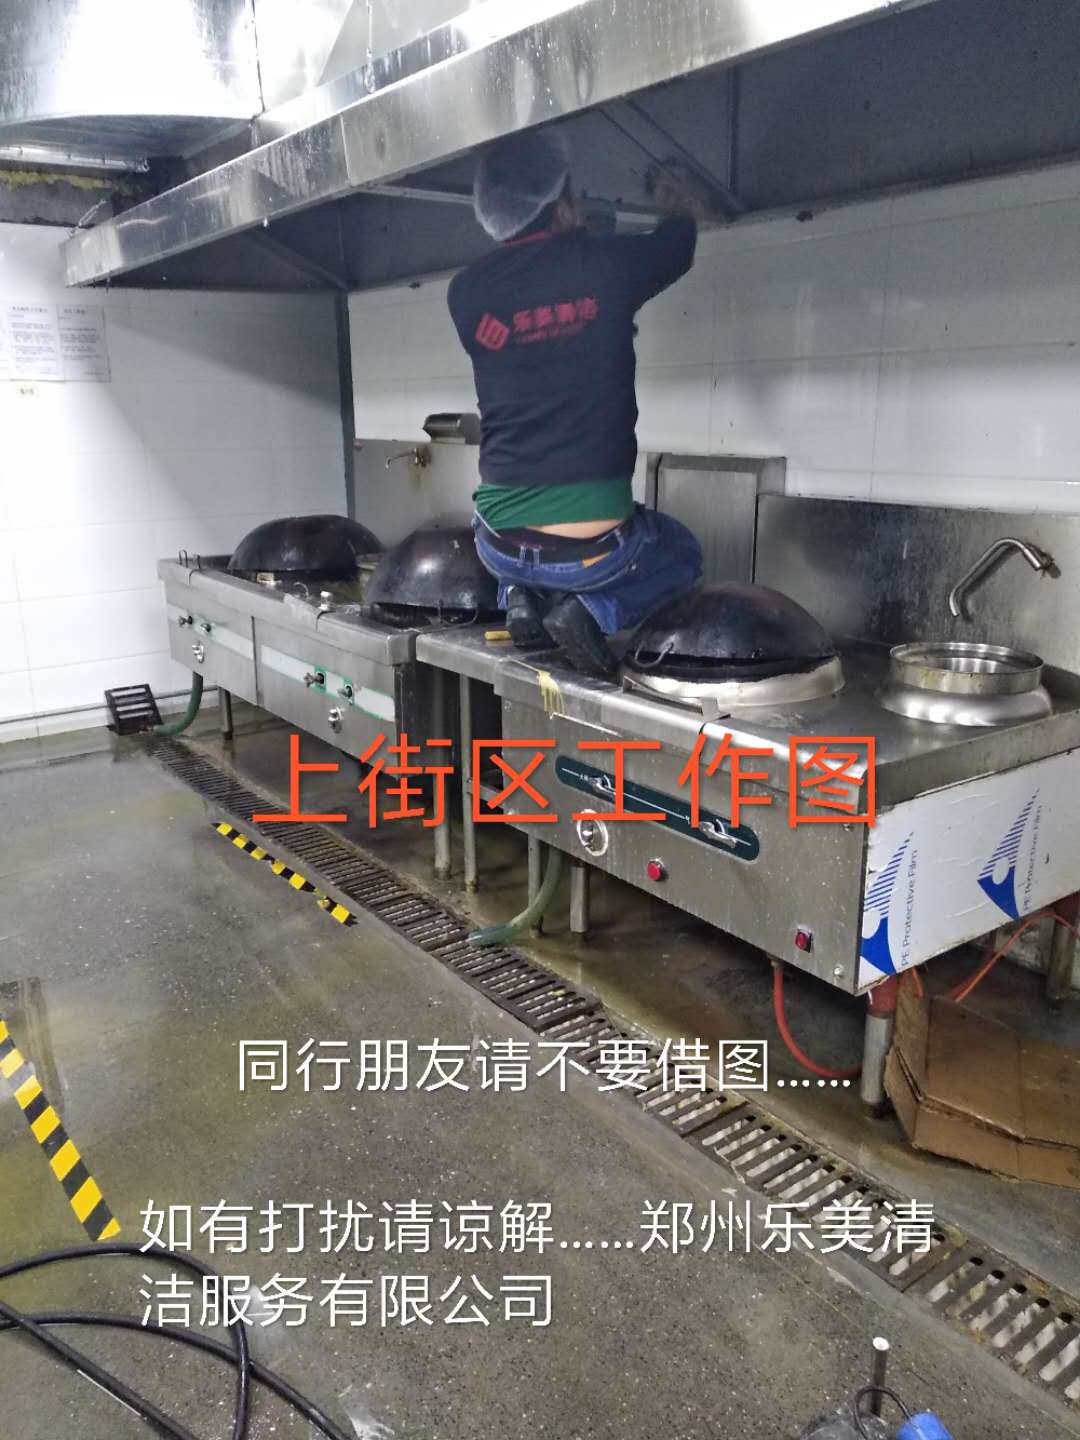 郑州保洁公司郑州油烟净化器清洗乐美清洁